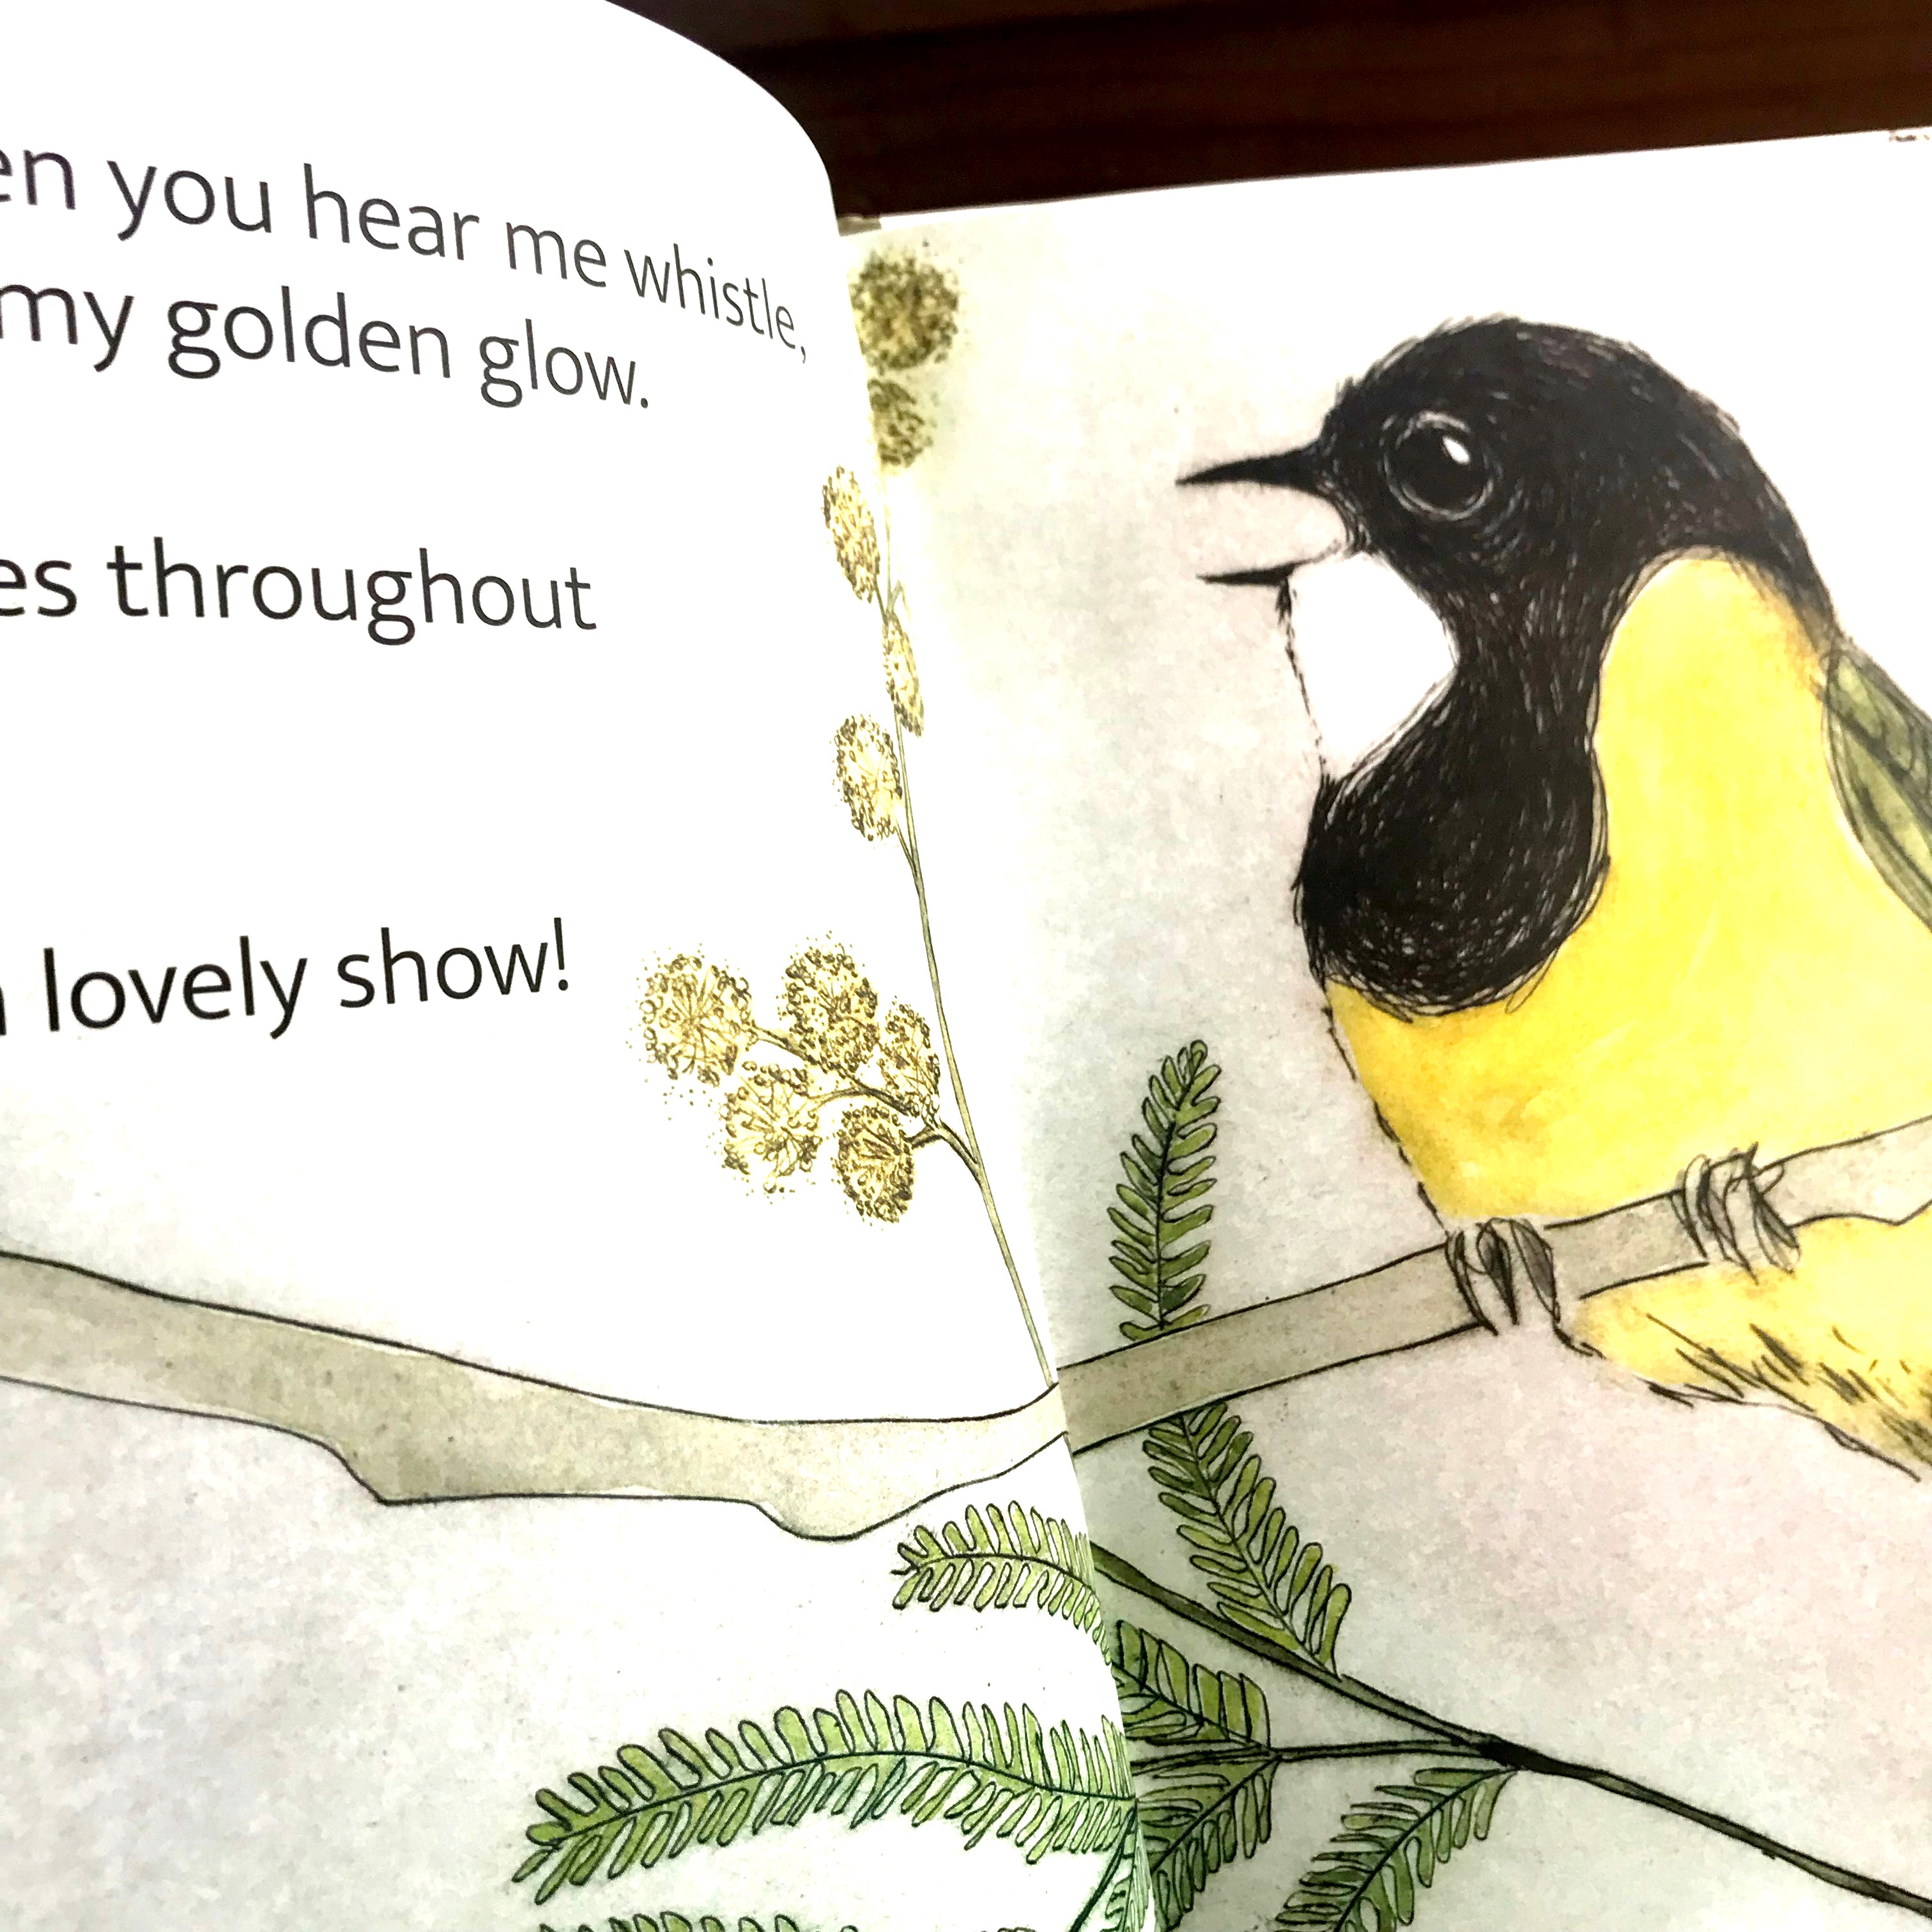 Book - THE BUSH BIRDS